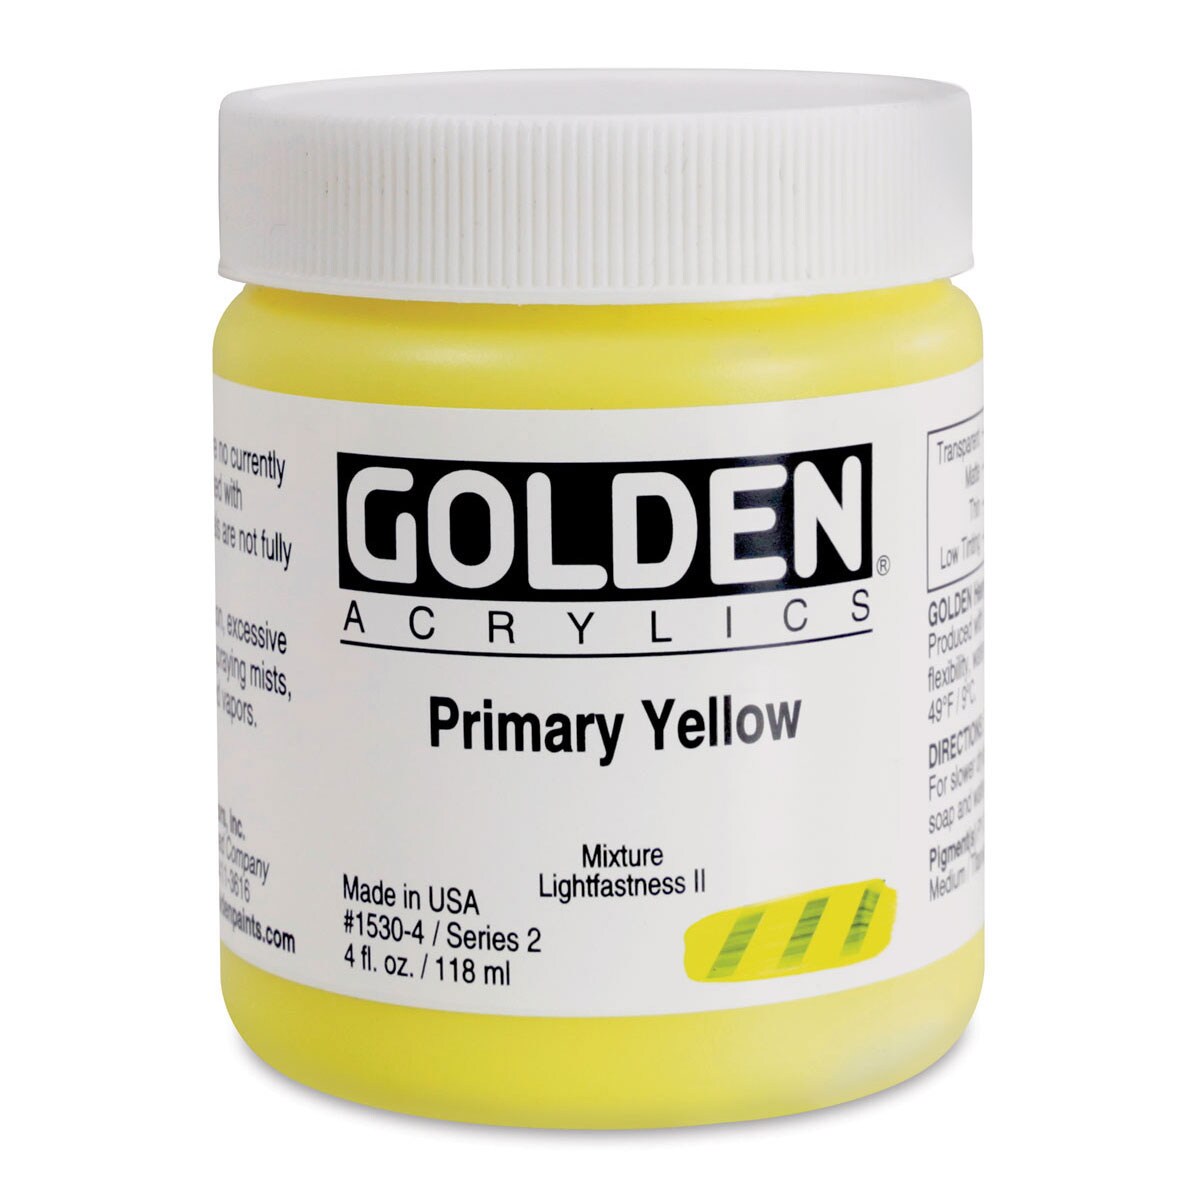 Golden Heavy Body Acrylic - Primary Yellow 4 oz.